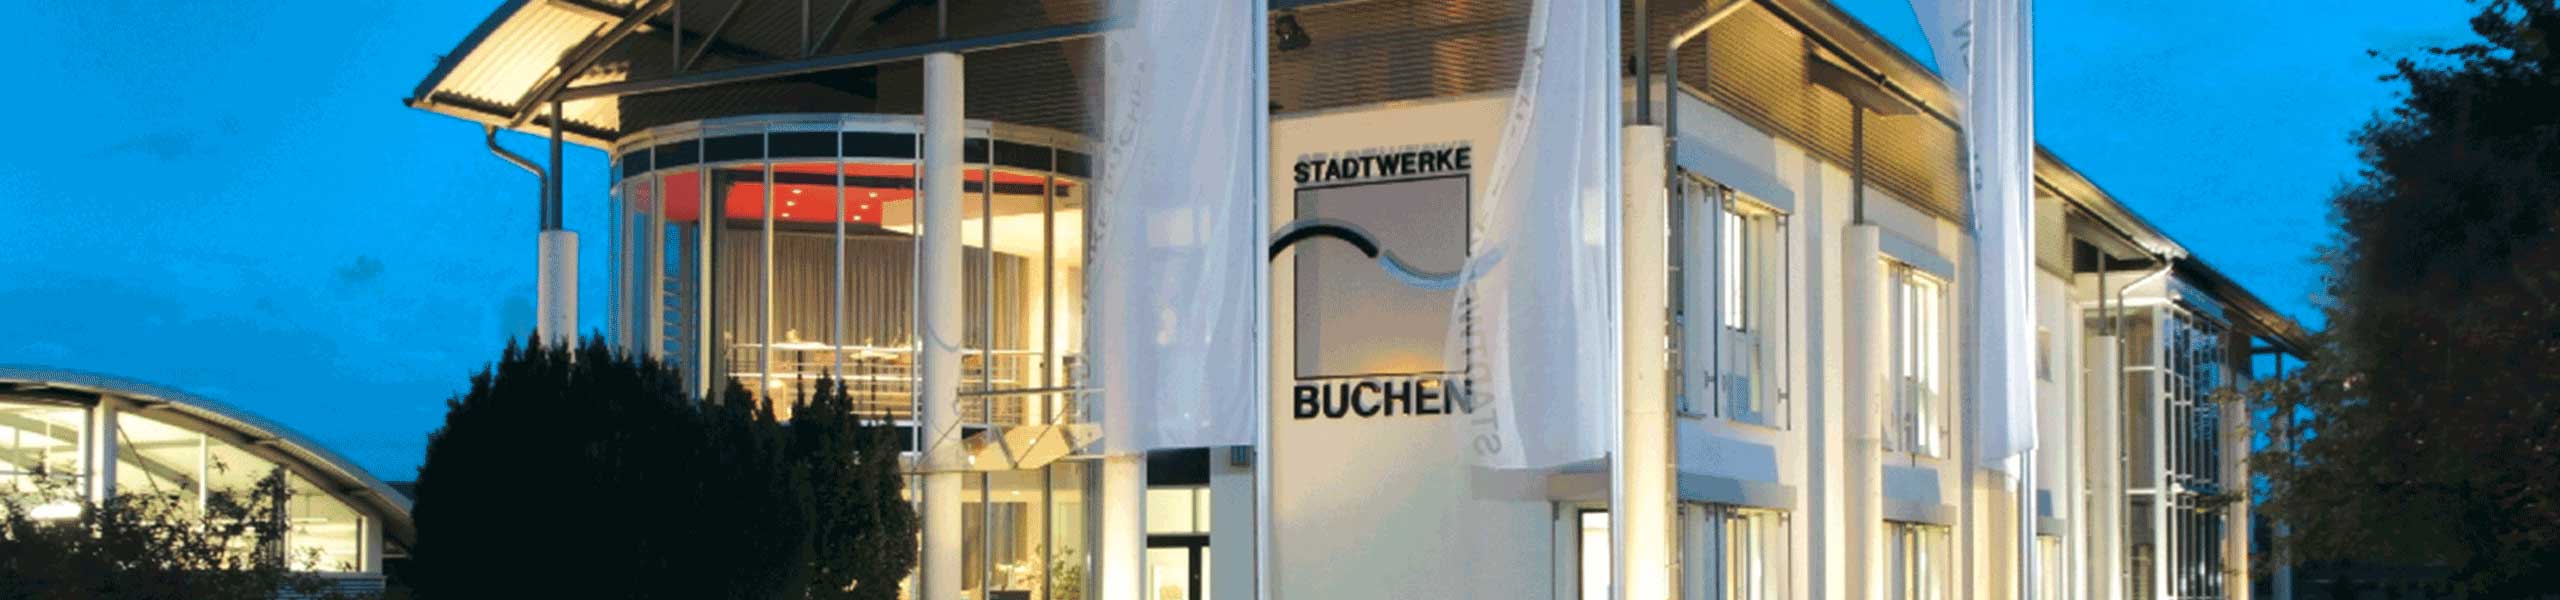 Stadtwerke Buchen GmbH & Co KG - Erzeugungsanlage Strom anmelden